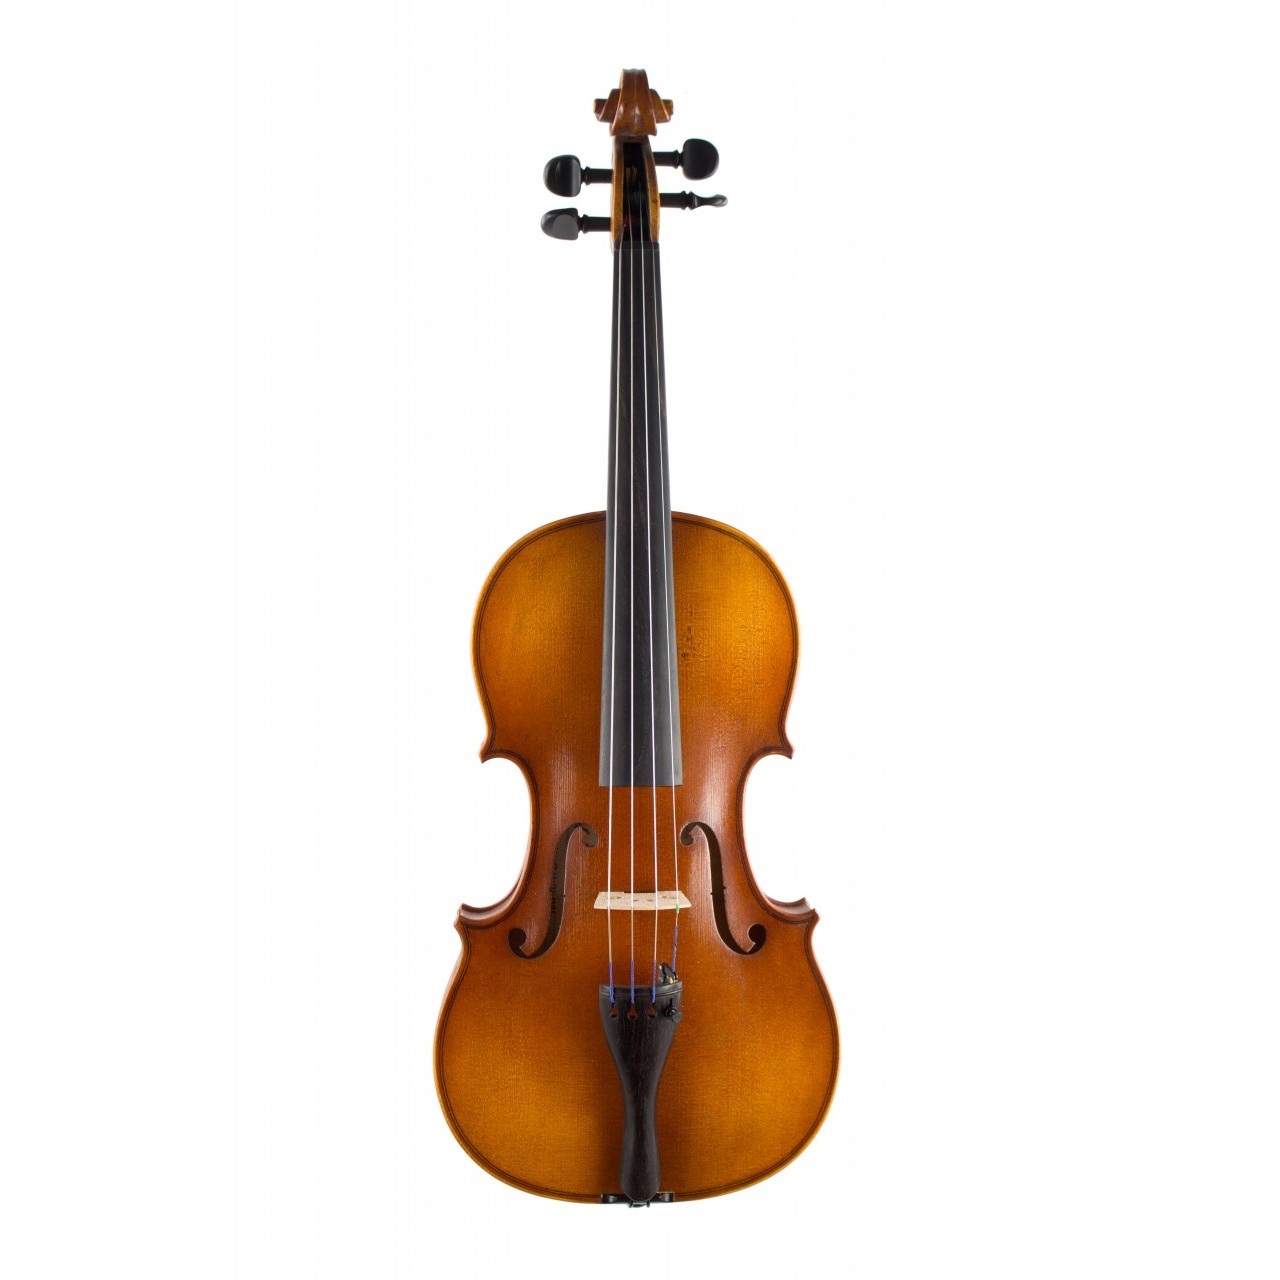 Höfner Violingarnitur H8 4/4 mit Koffer und Bogen